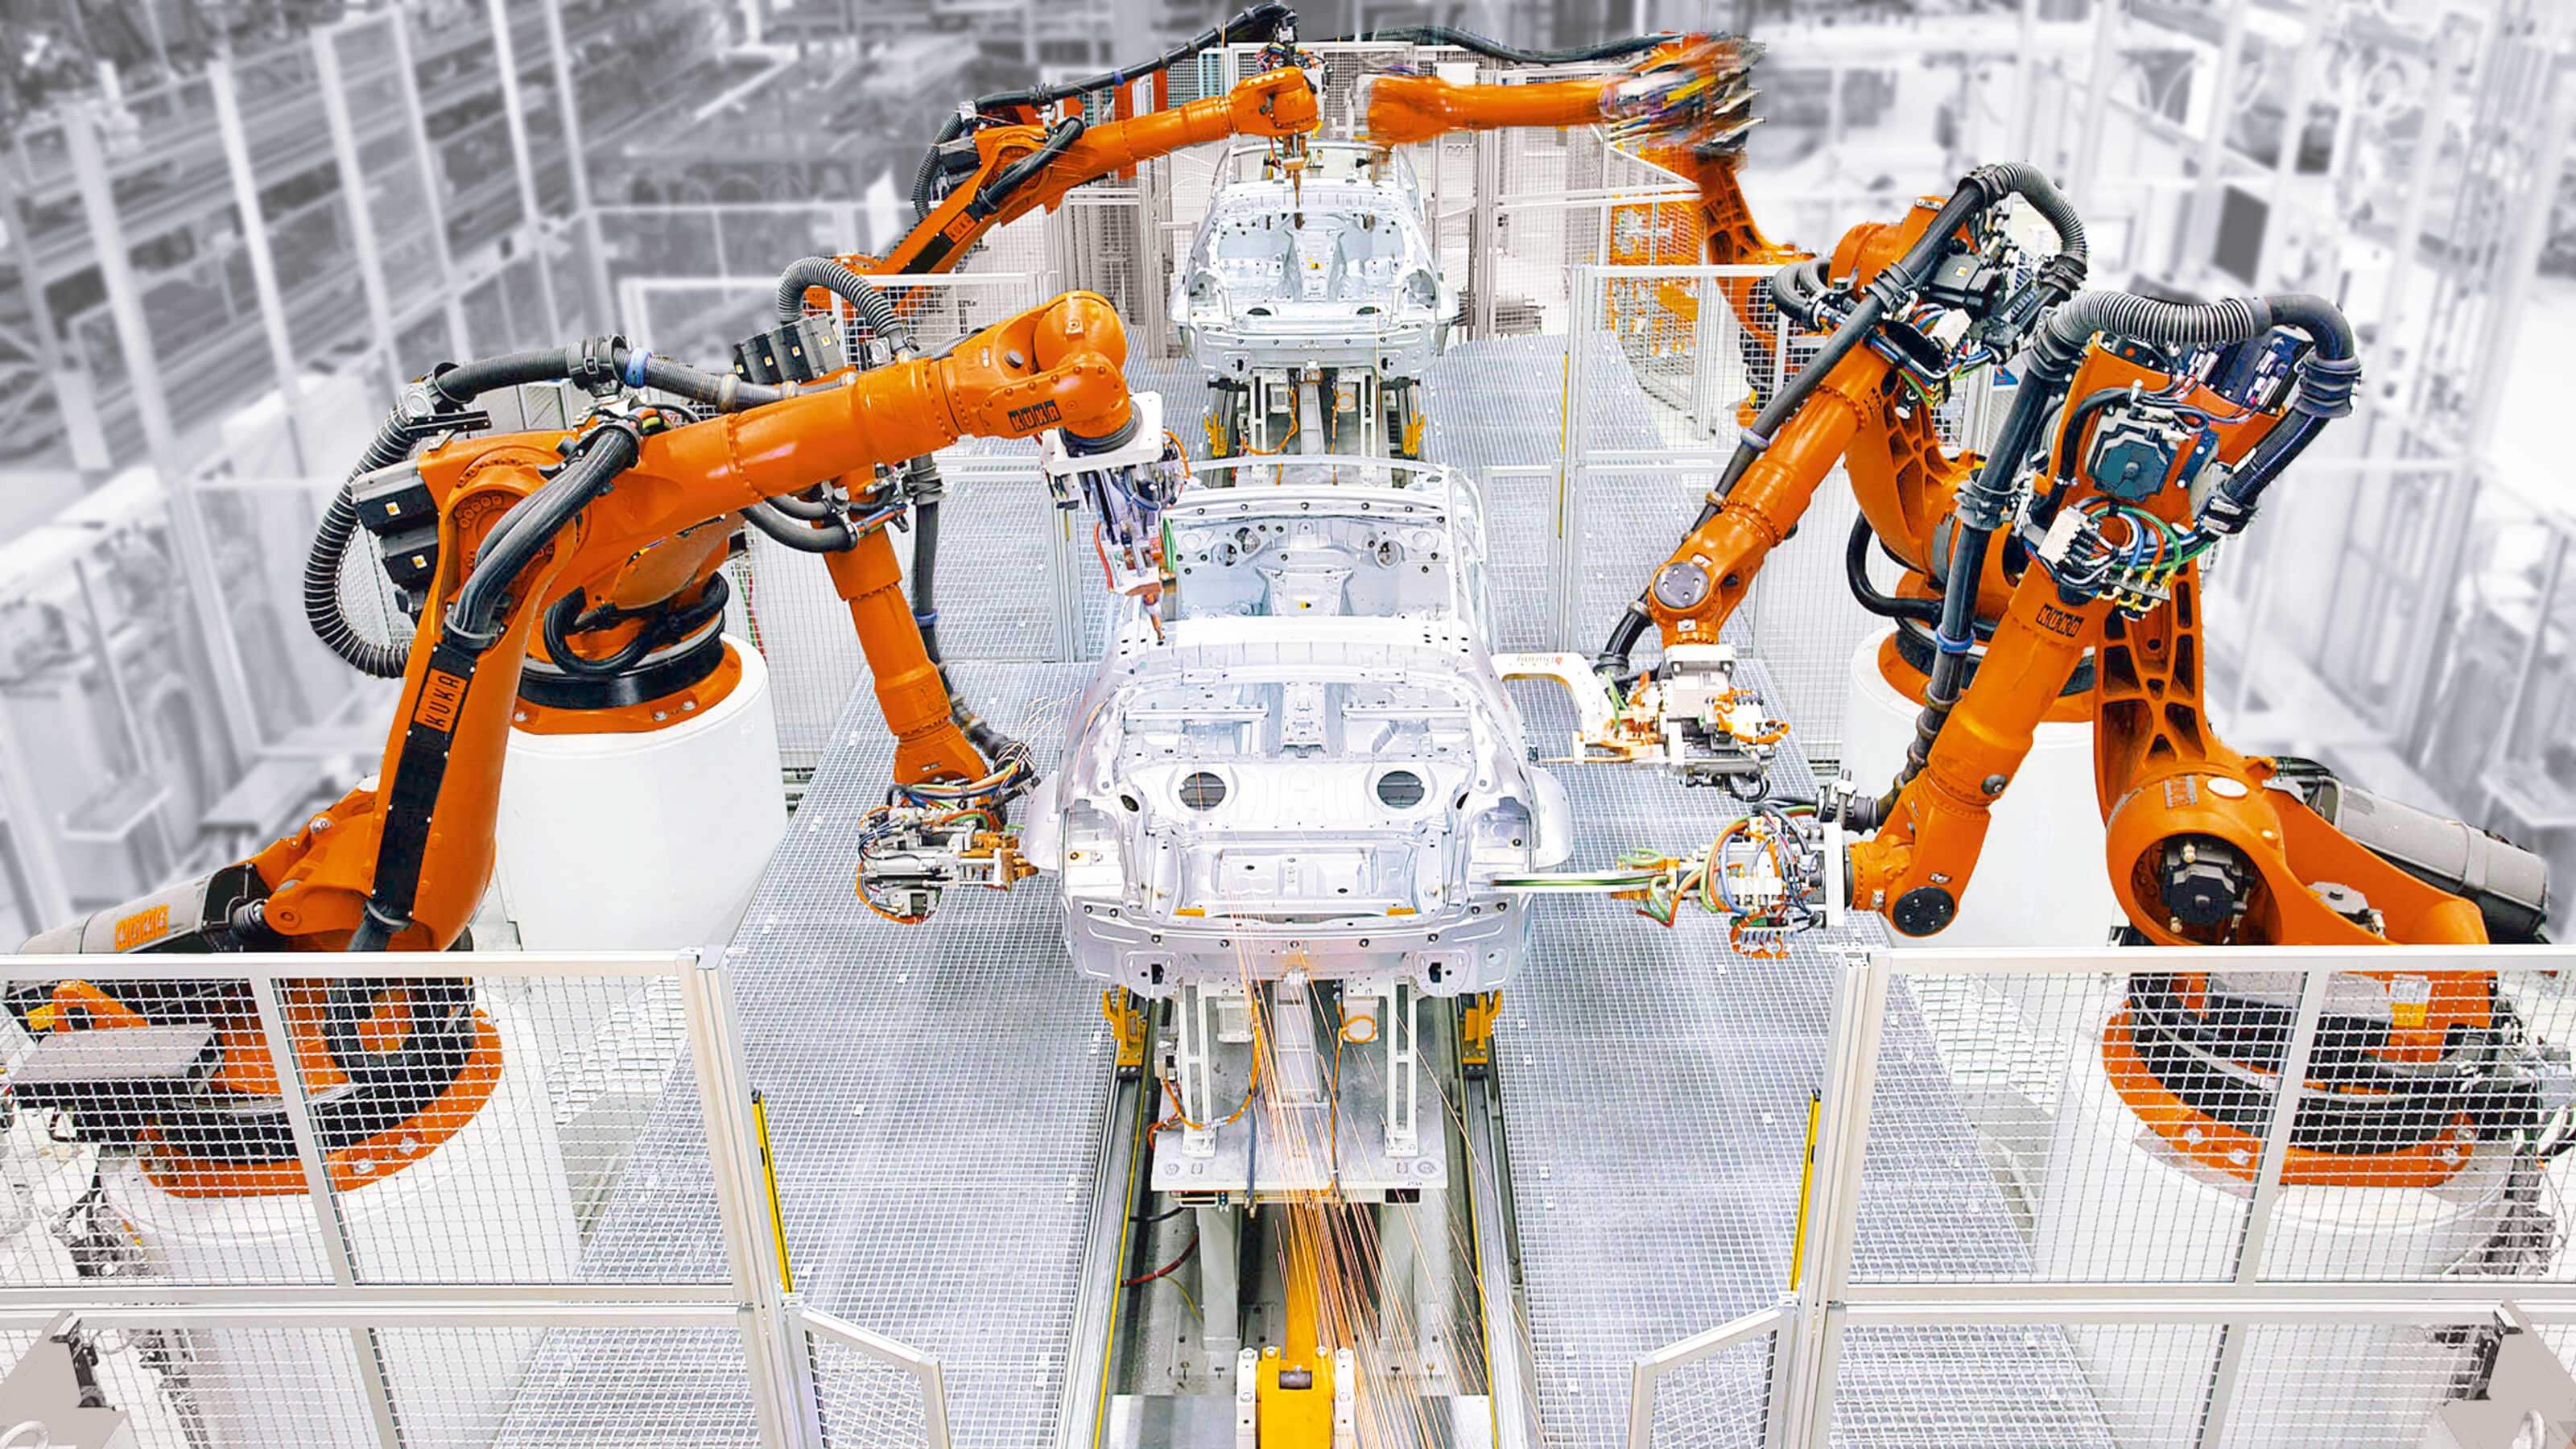 Работы и технологии робот. Kuka промышленные роботы Тесла. Kuka Германия Дельта робот. Робототехника в промышленности. Искусственный интеллект в промышленности.